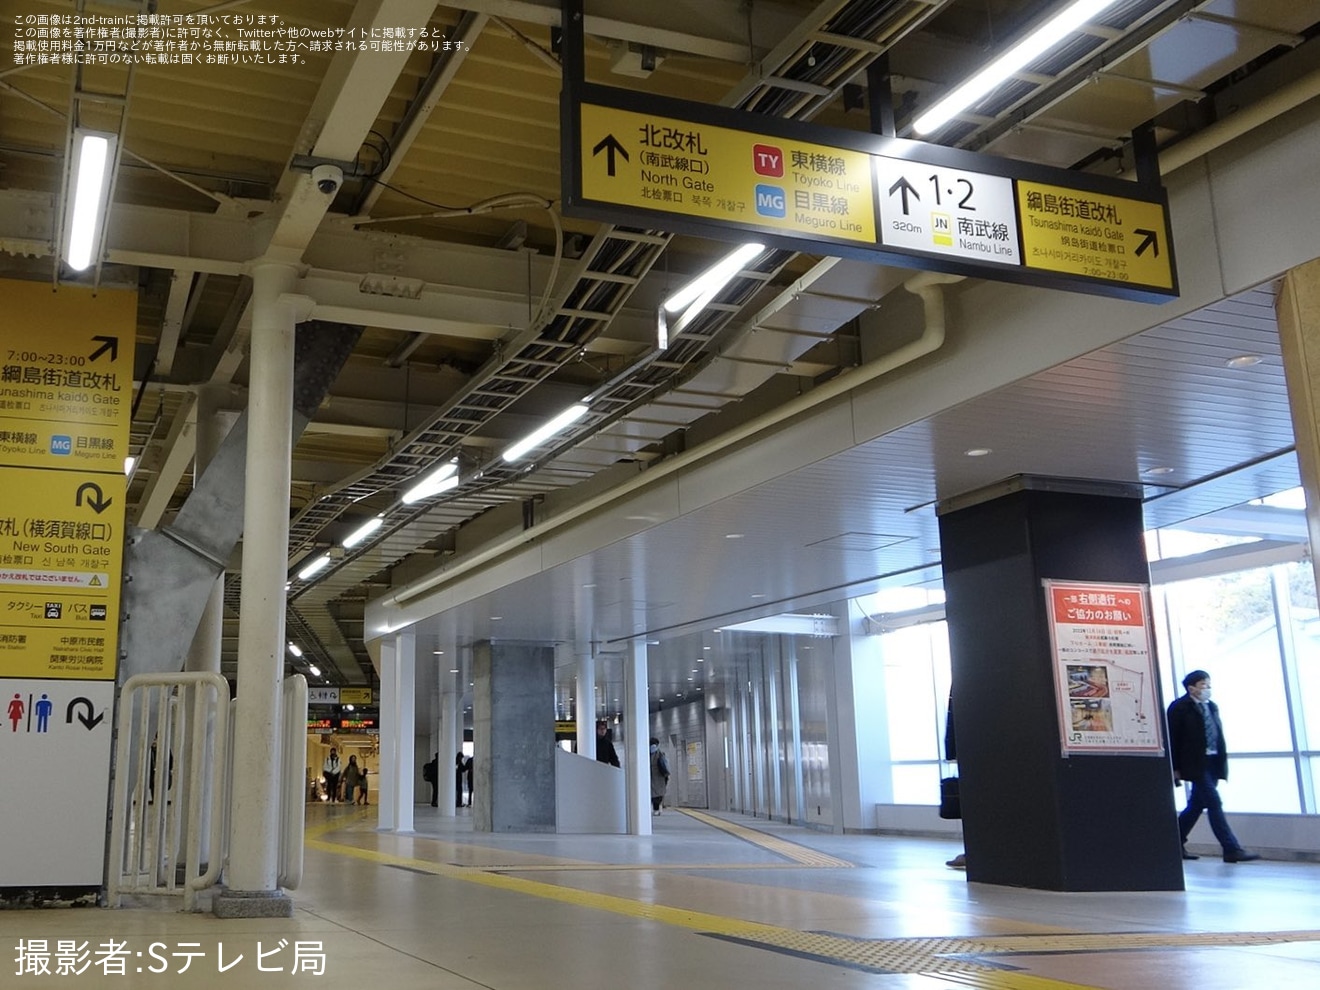 【JR東】「武蔵小杉駅 綱島街道改札」供用開始の拡大写真